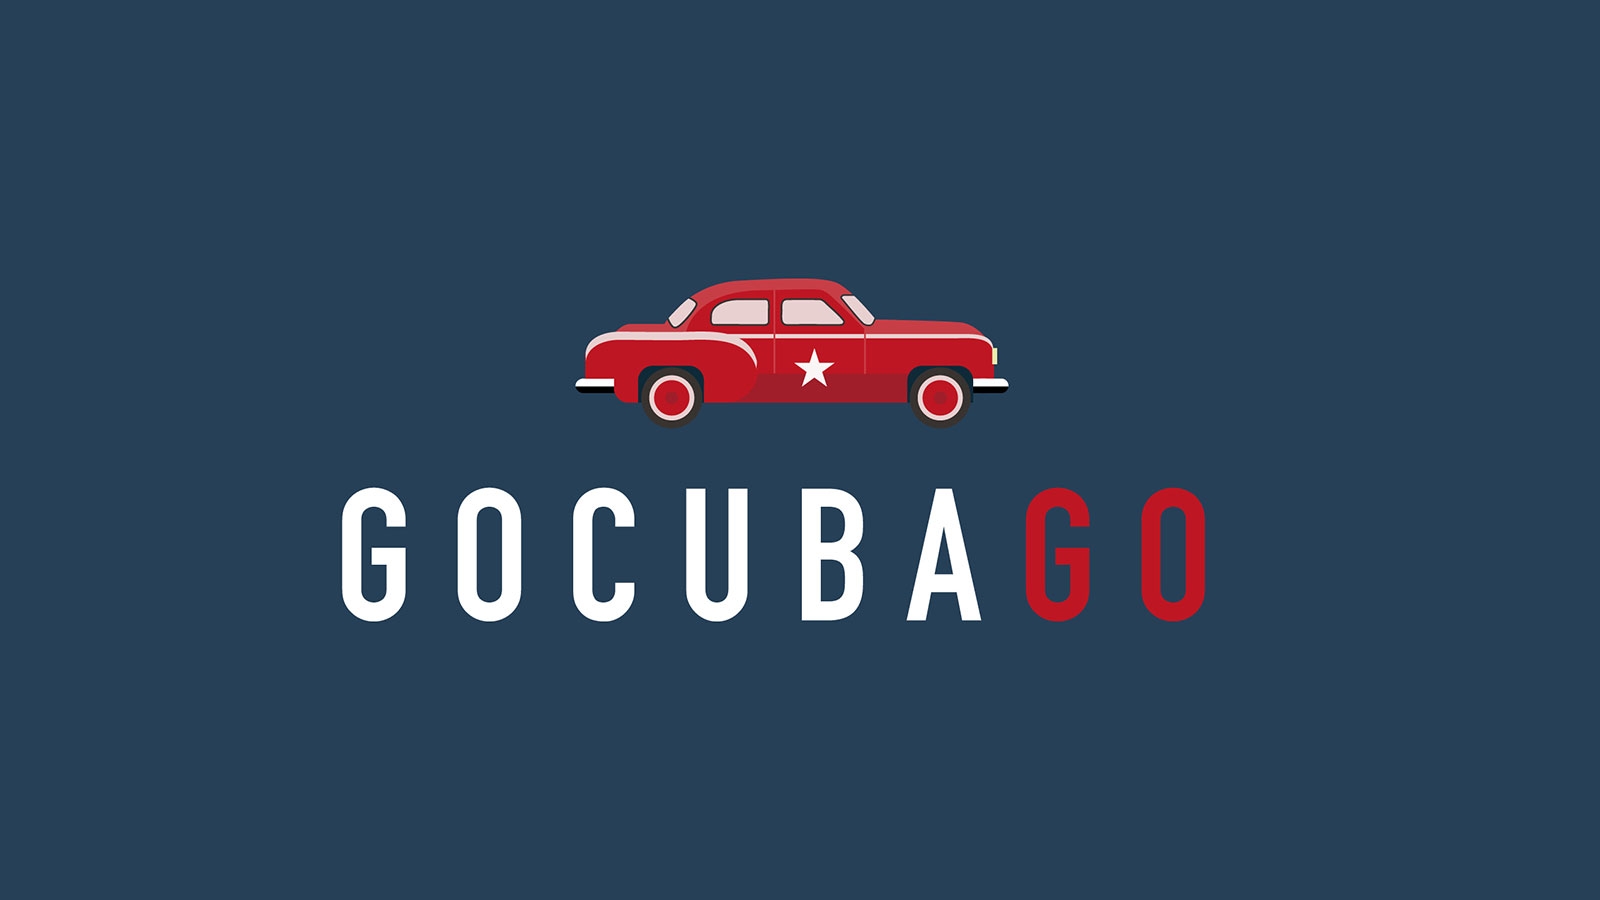 Go Cuba Go | gocubago.com | 2018 (Logo No 02) © echonet communication GmbH